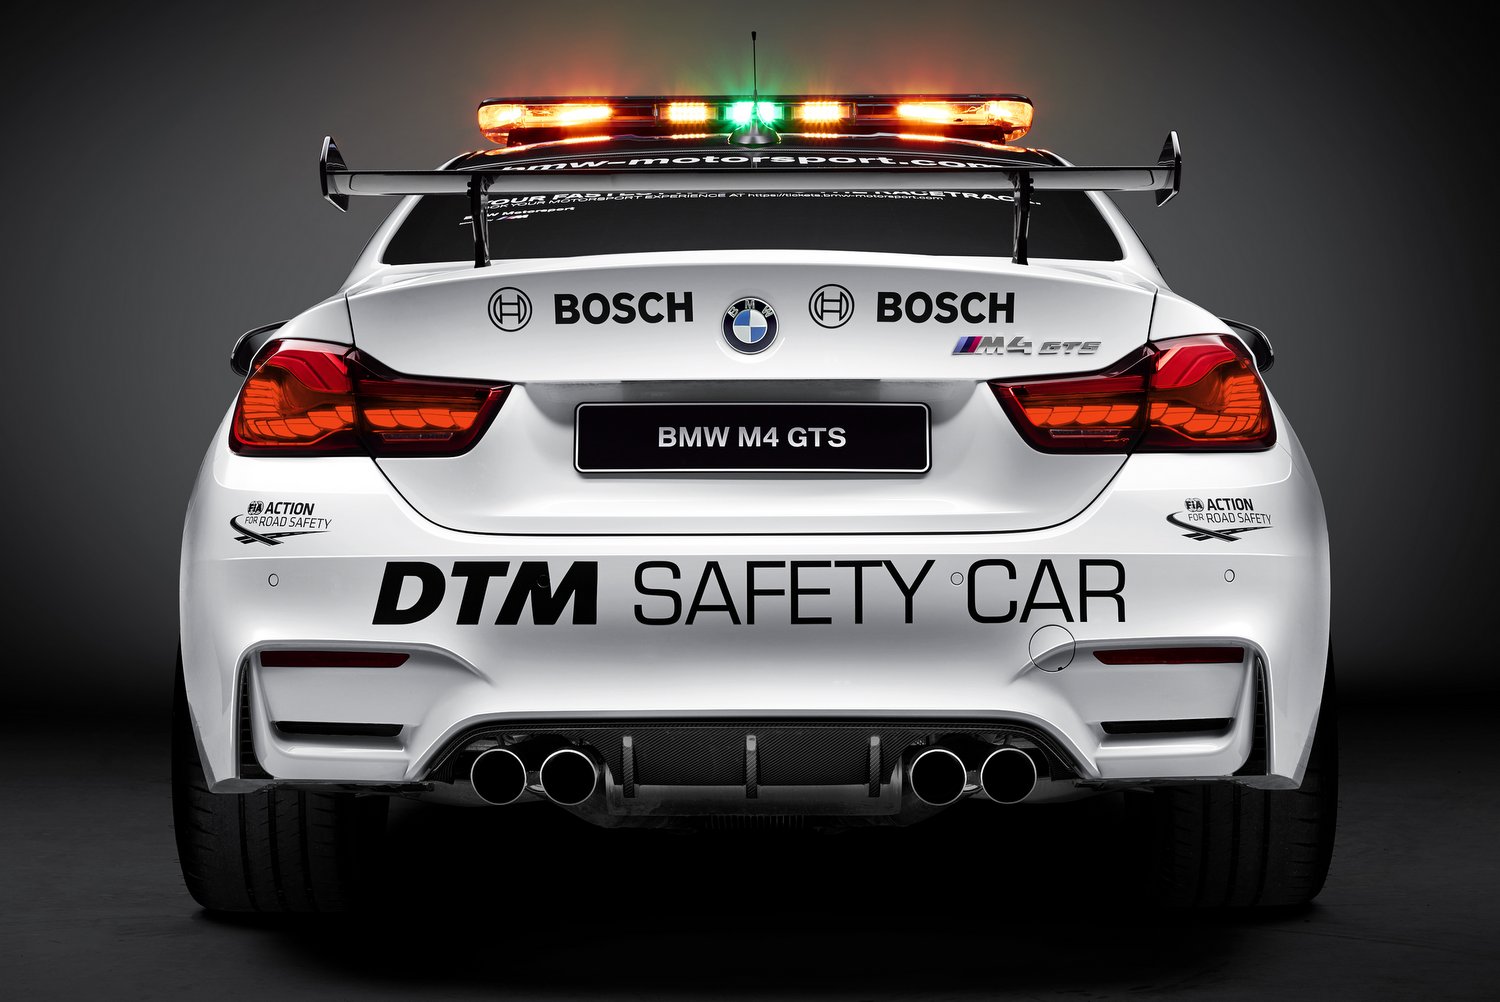 A legsportosabb BMW vigyáz a DTM biztonságára 15